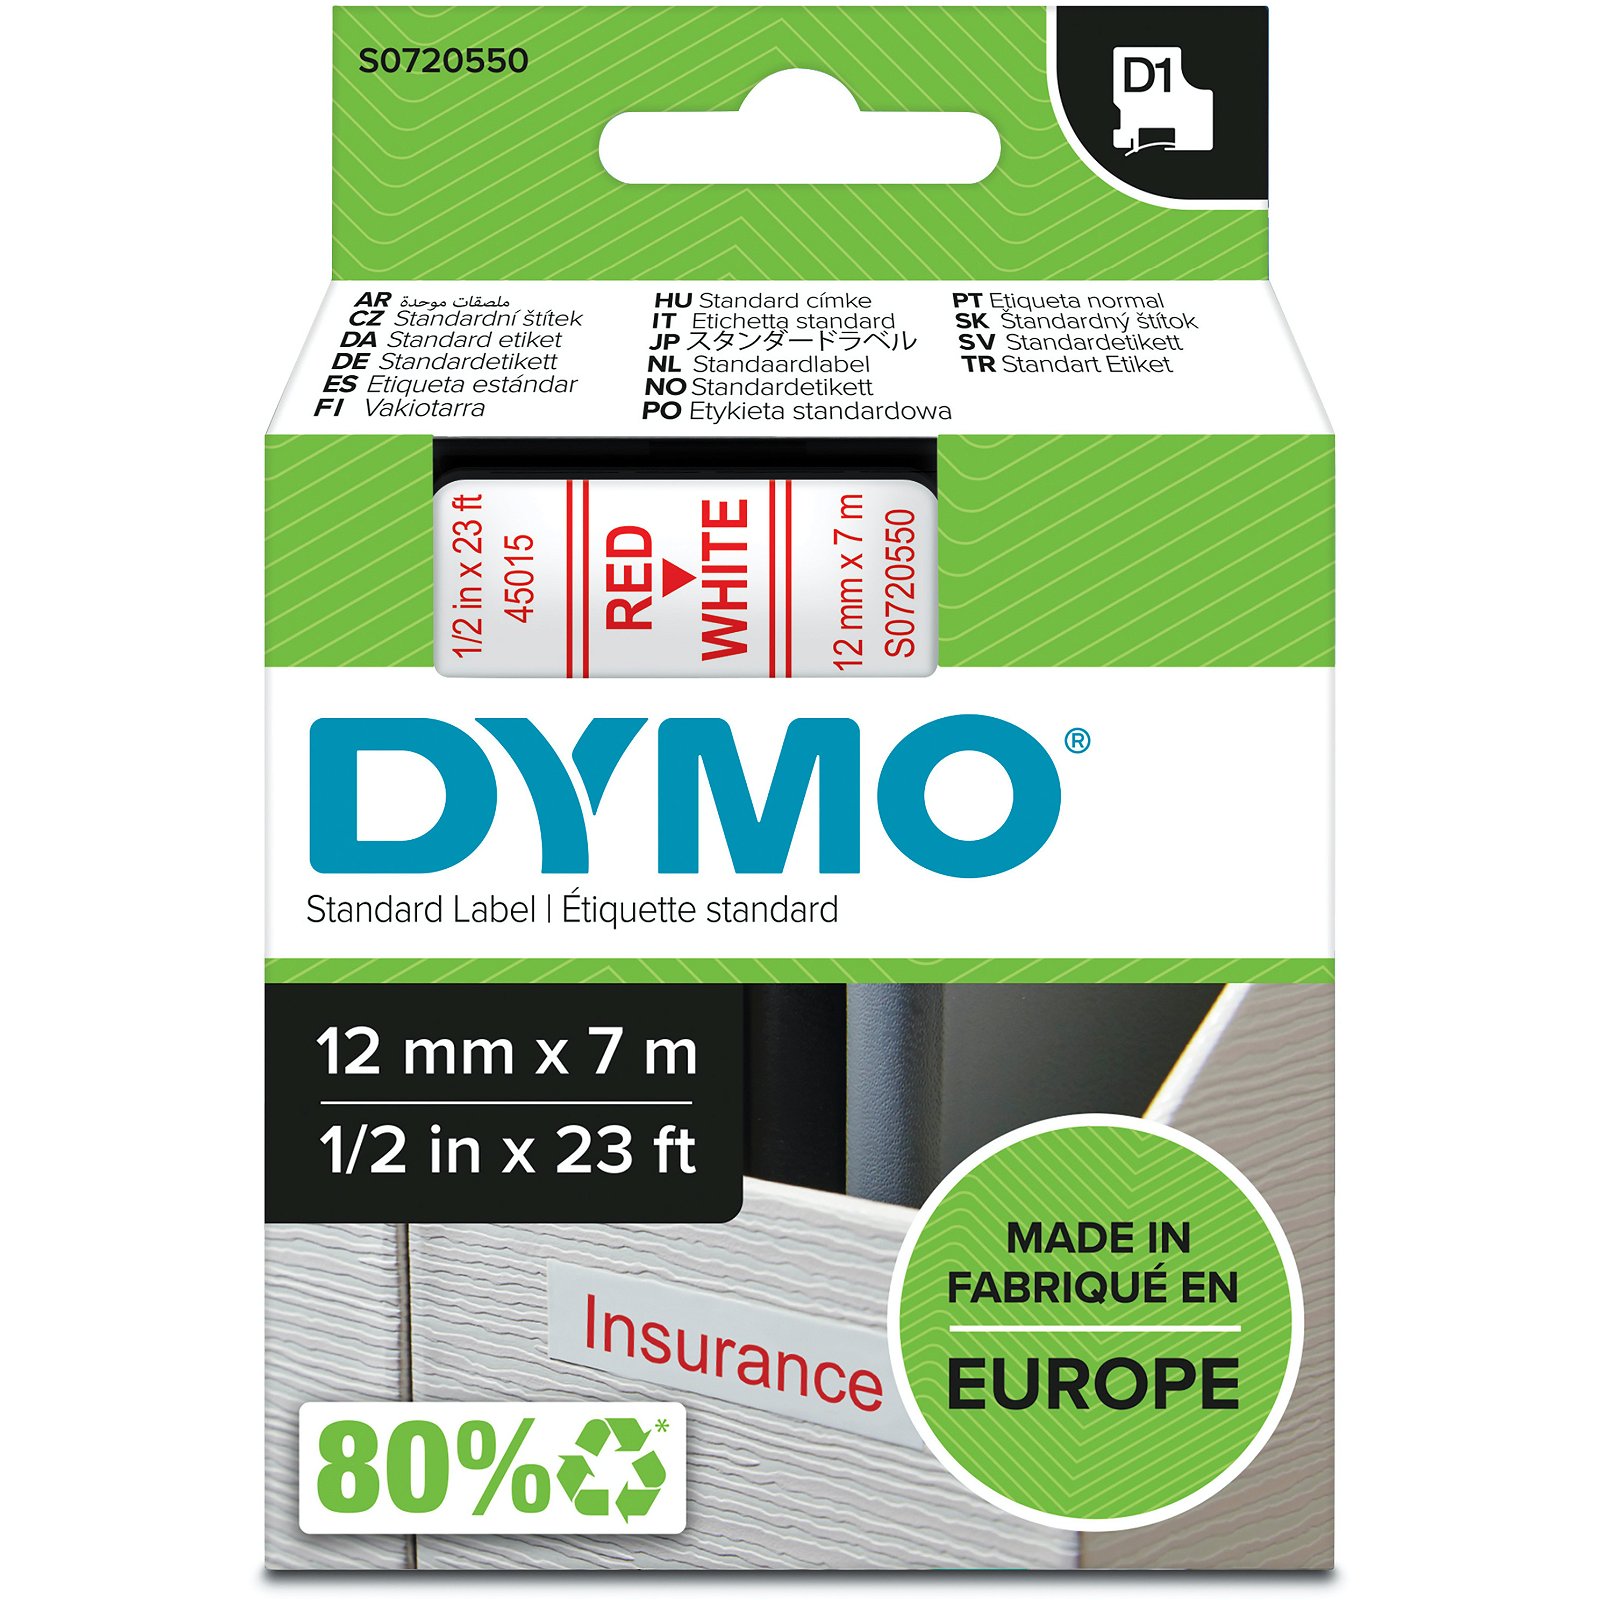 Dymo D1 standard tapekasette 12 mm rod;hvid Polyester